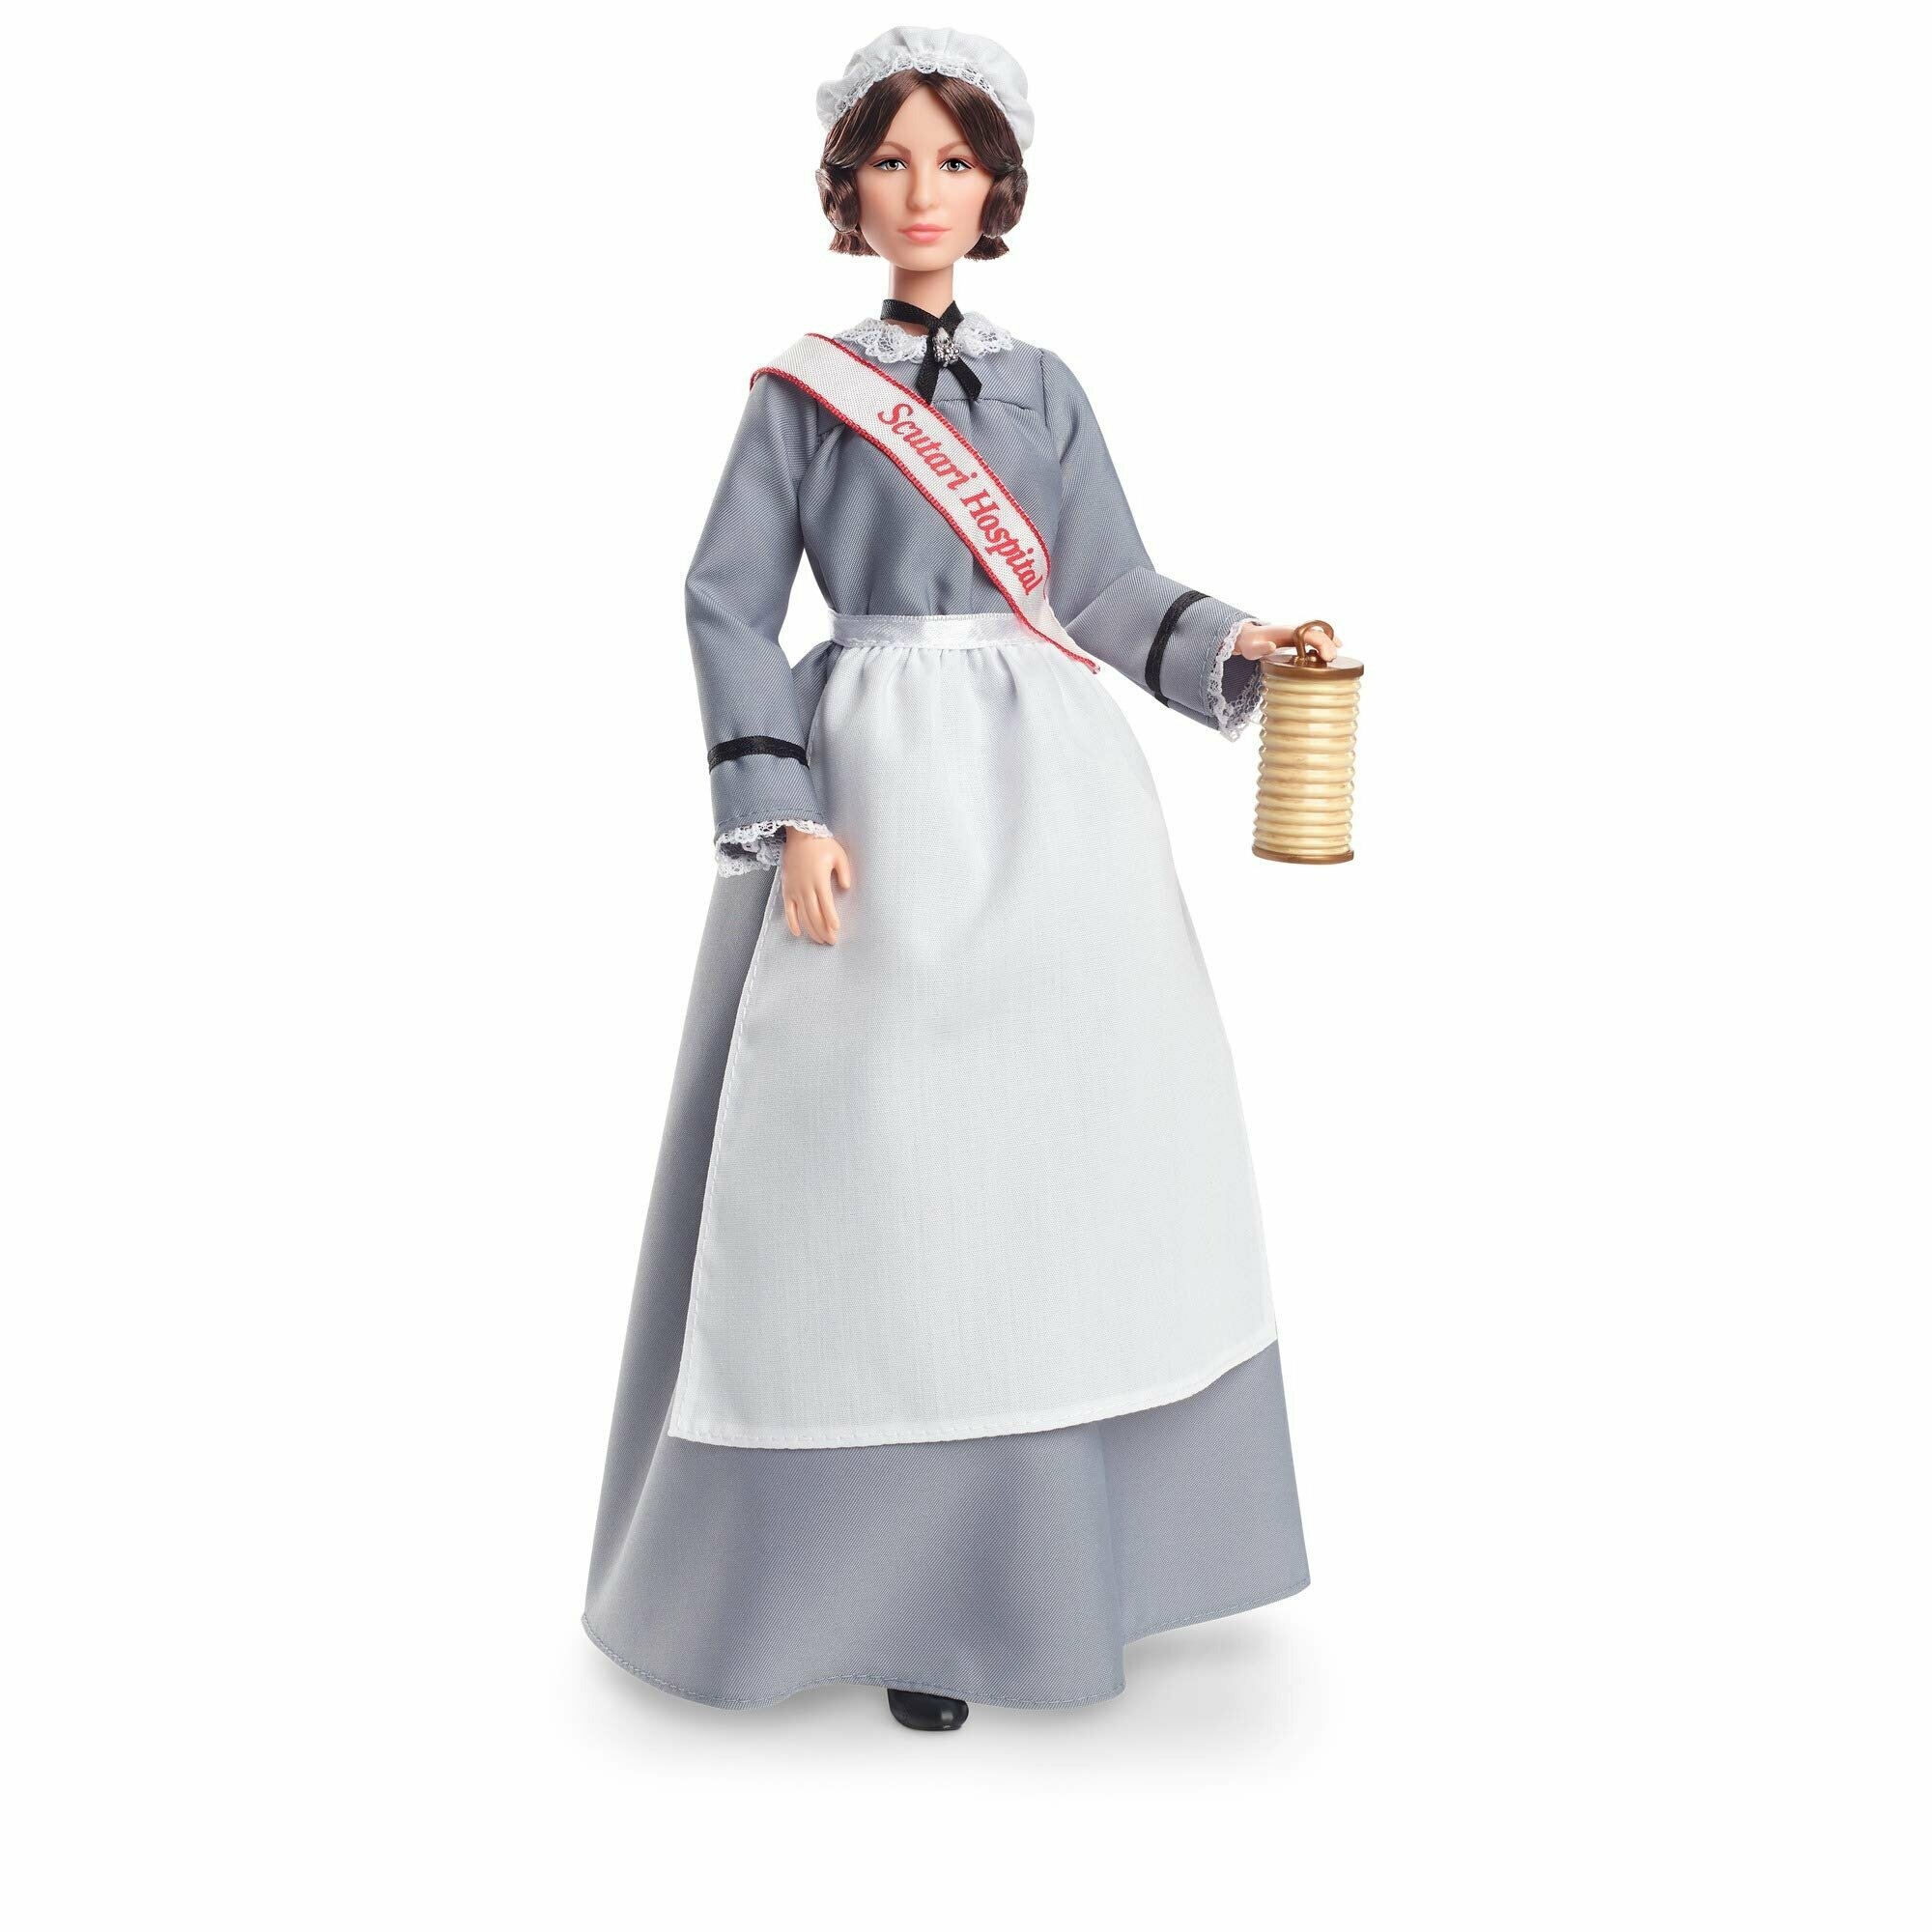 Кукла Barbie Вдохновляющие Женщины Флоренс Найтингейл, 29 см, GHT87